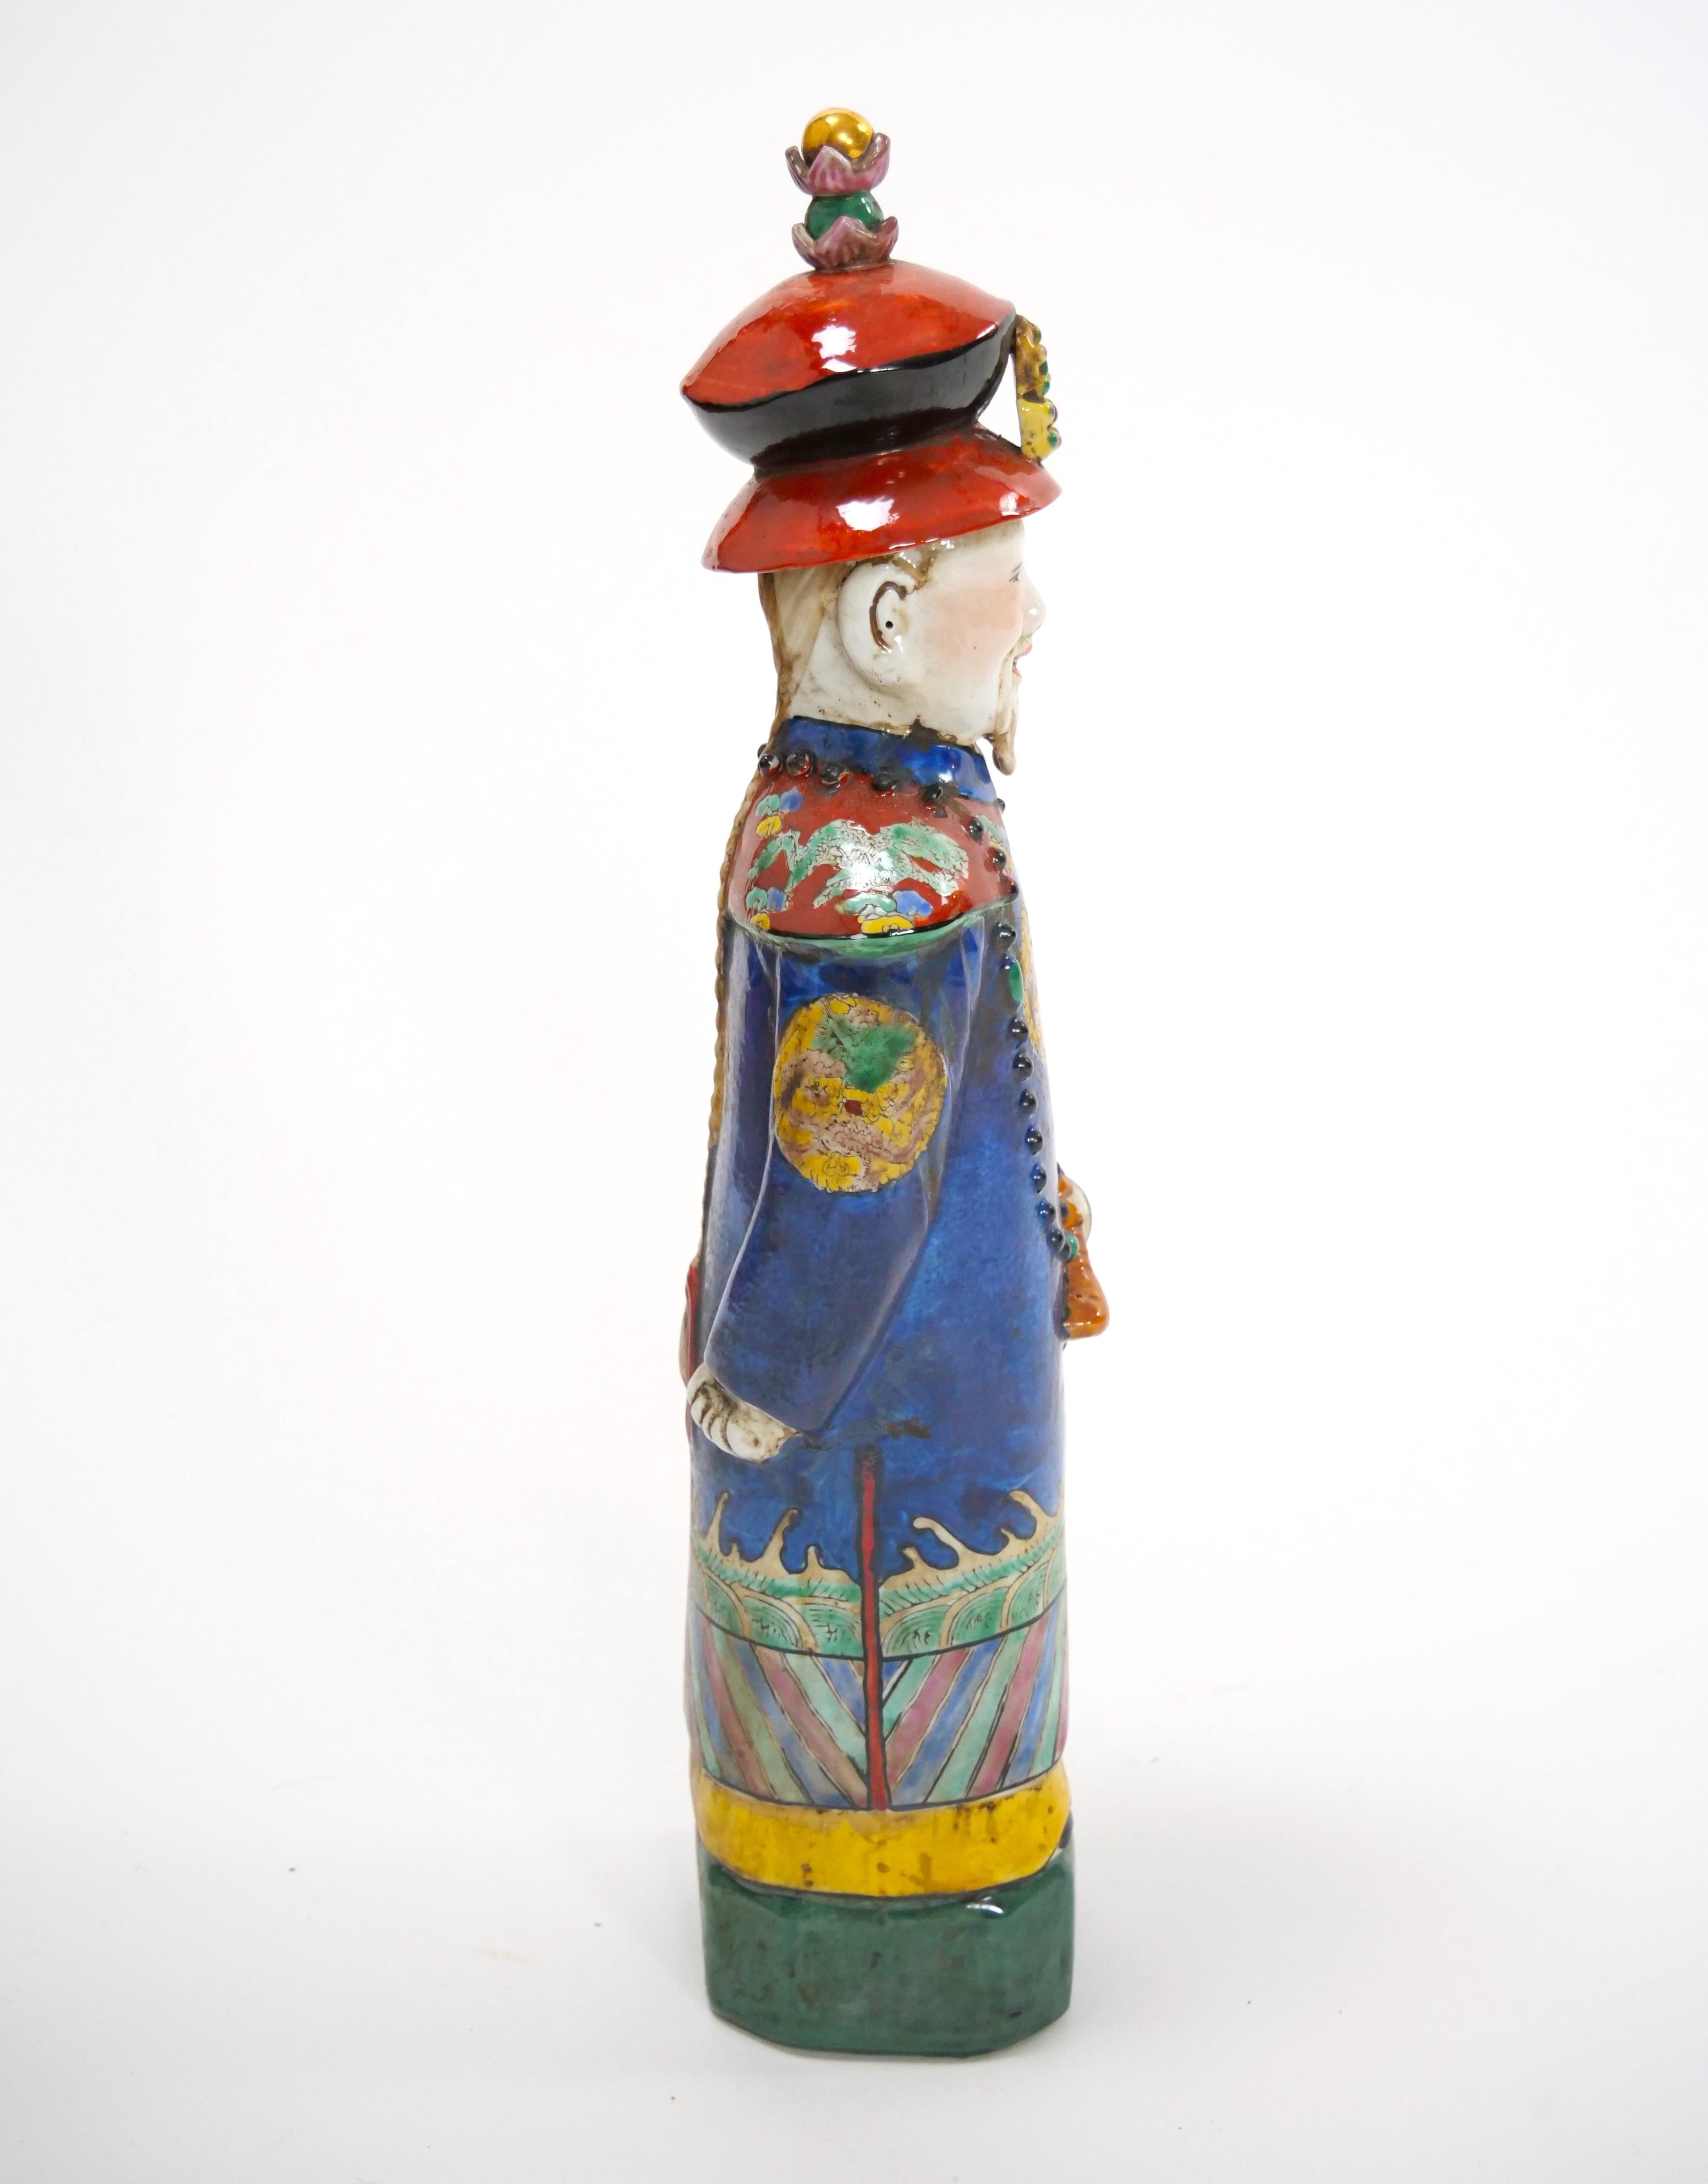 Illustrez votre collection avec cette exquise figurine en porcelaine chinoise inspirée de l'illustre dynastie Qing. Réalisée dans un étonnant style wucai, la figurine représente un empereur distingué, un roi royal ou un monarque majestueux paré de